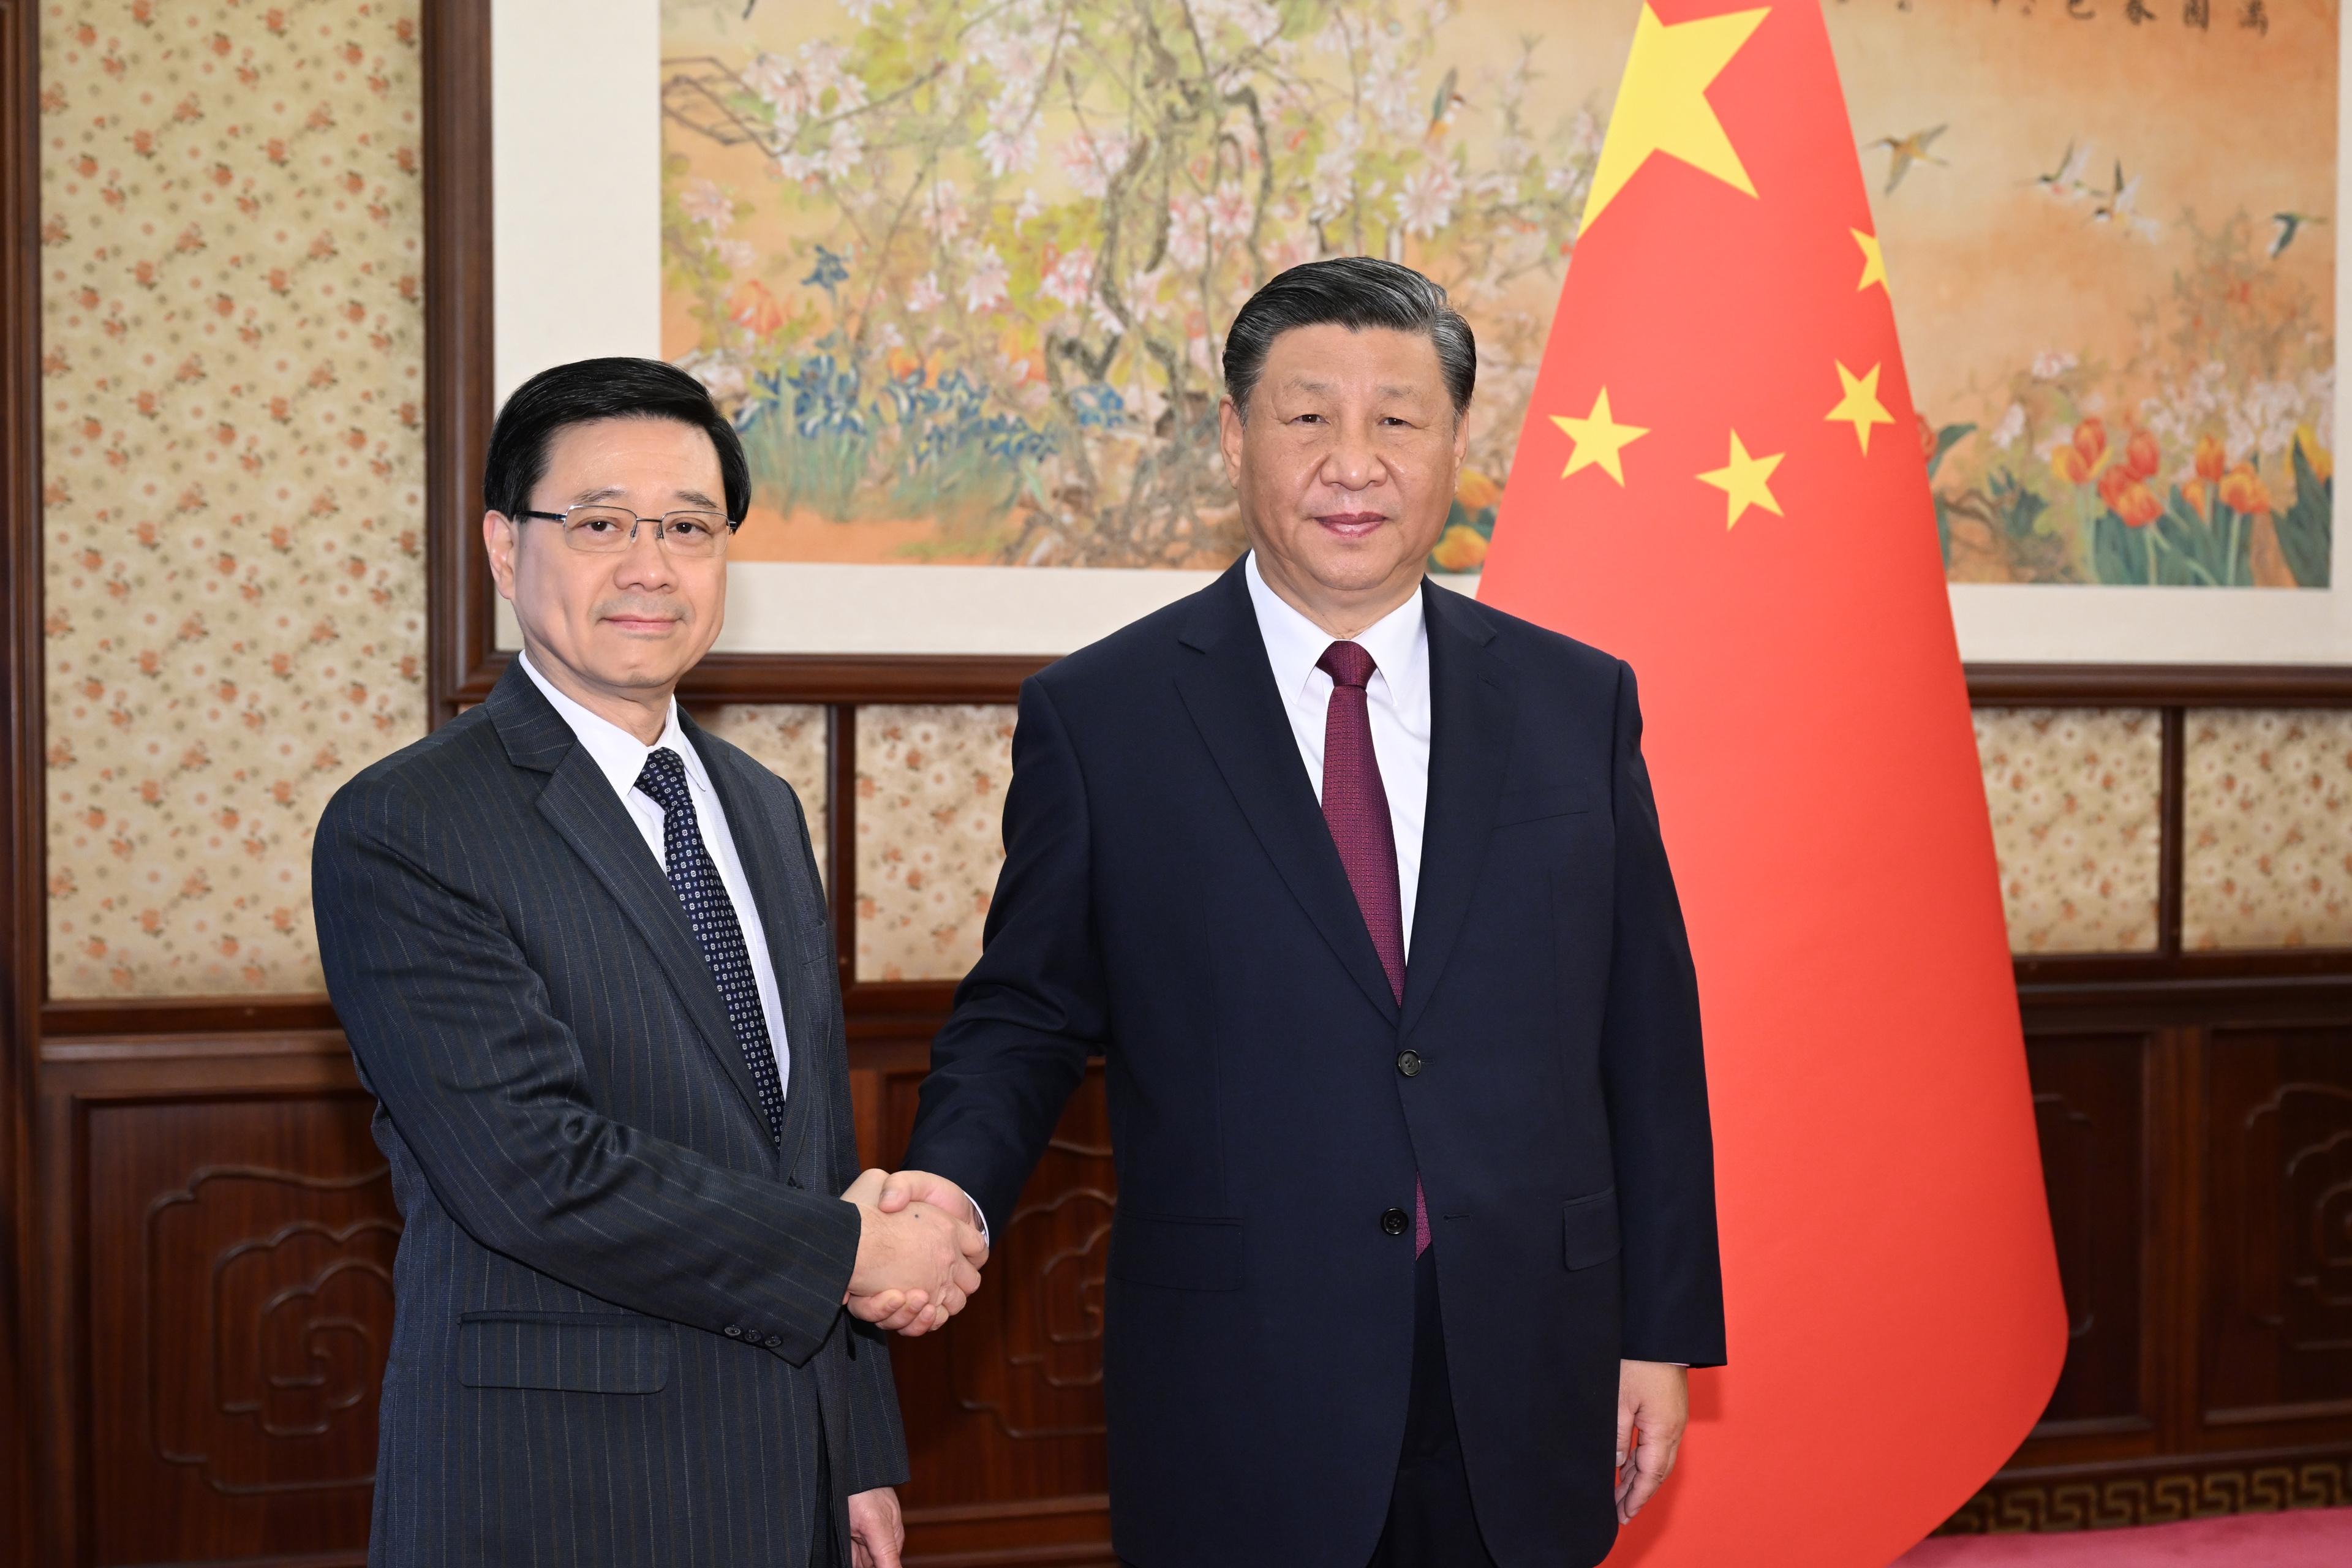 行政长官李家超（左）今日（十二月十八日）在北京向国家主席习近平（右）述职，汇报香港经济、社会和政治等方面的最新情况。图示二人在会面前合照。